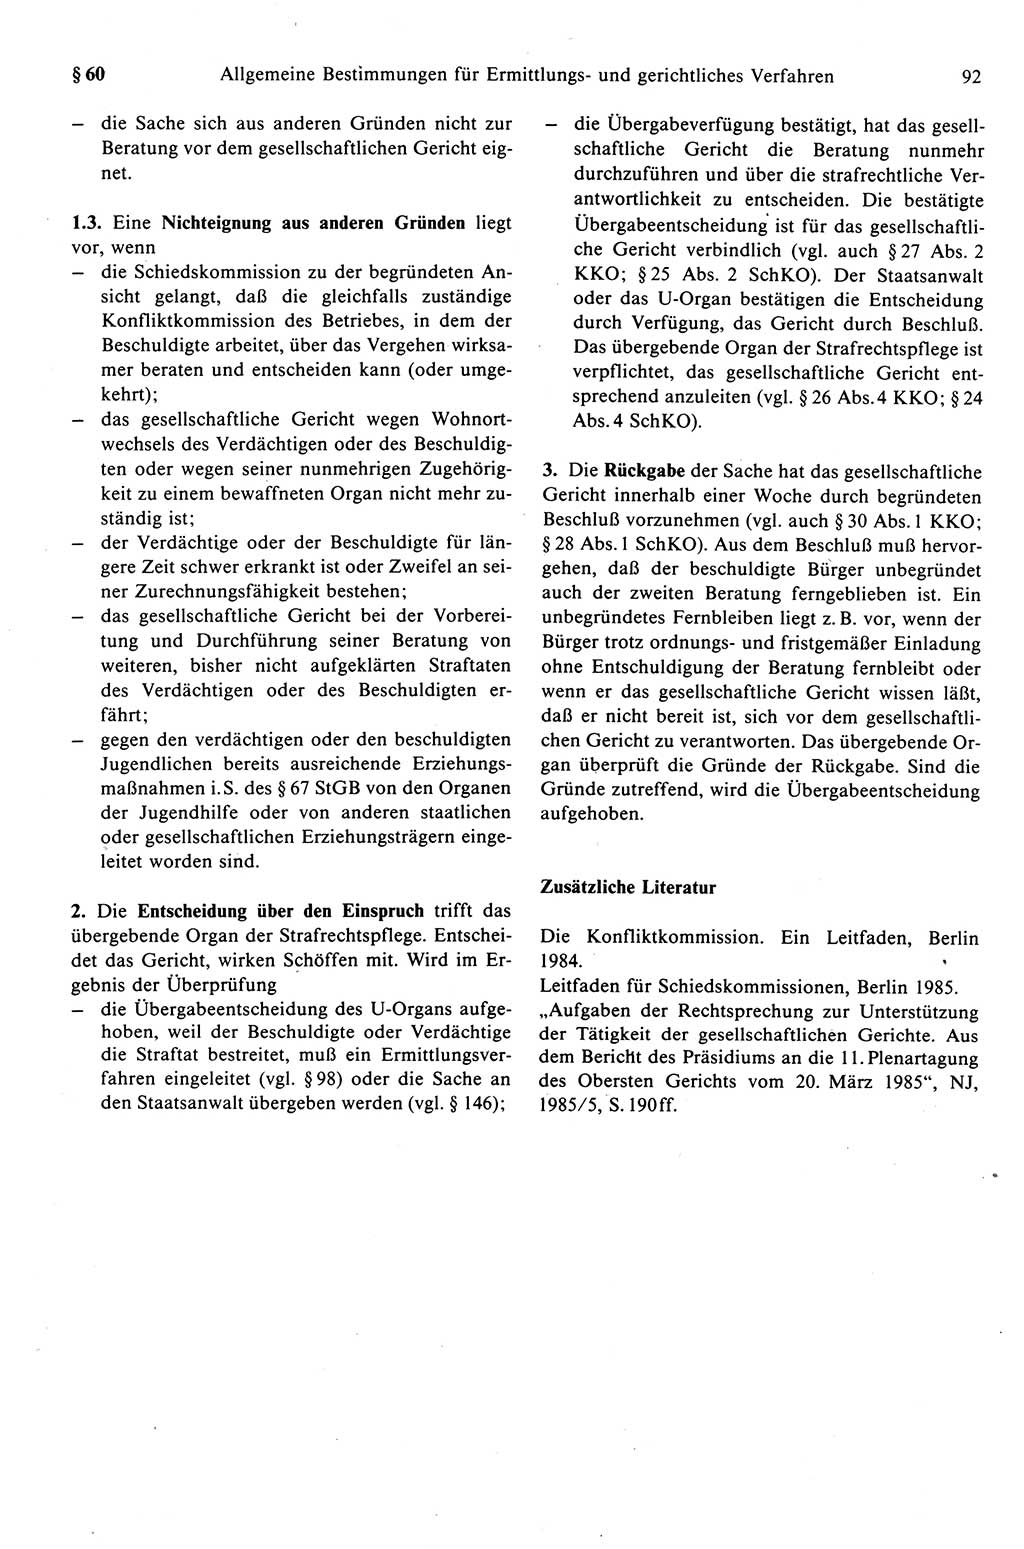 Strafprozeßrecht der DDR (Deutsche Demokratische Republik), Kommentar zur Strafprozeßordnung (StPO) 1989, Seite 92 (Strafprozeßr. DDR Komm. StPO 1989, S. 92)